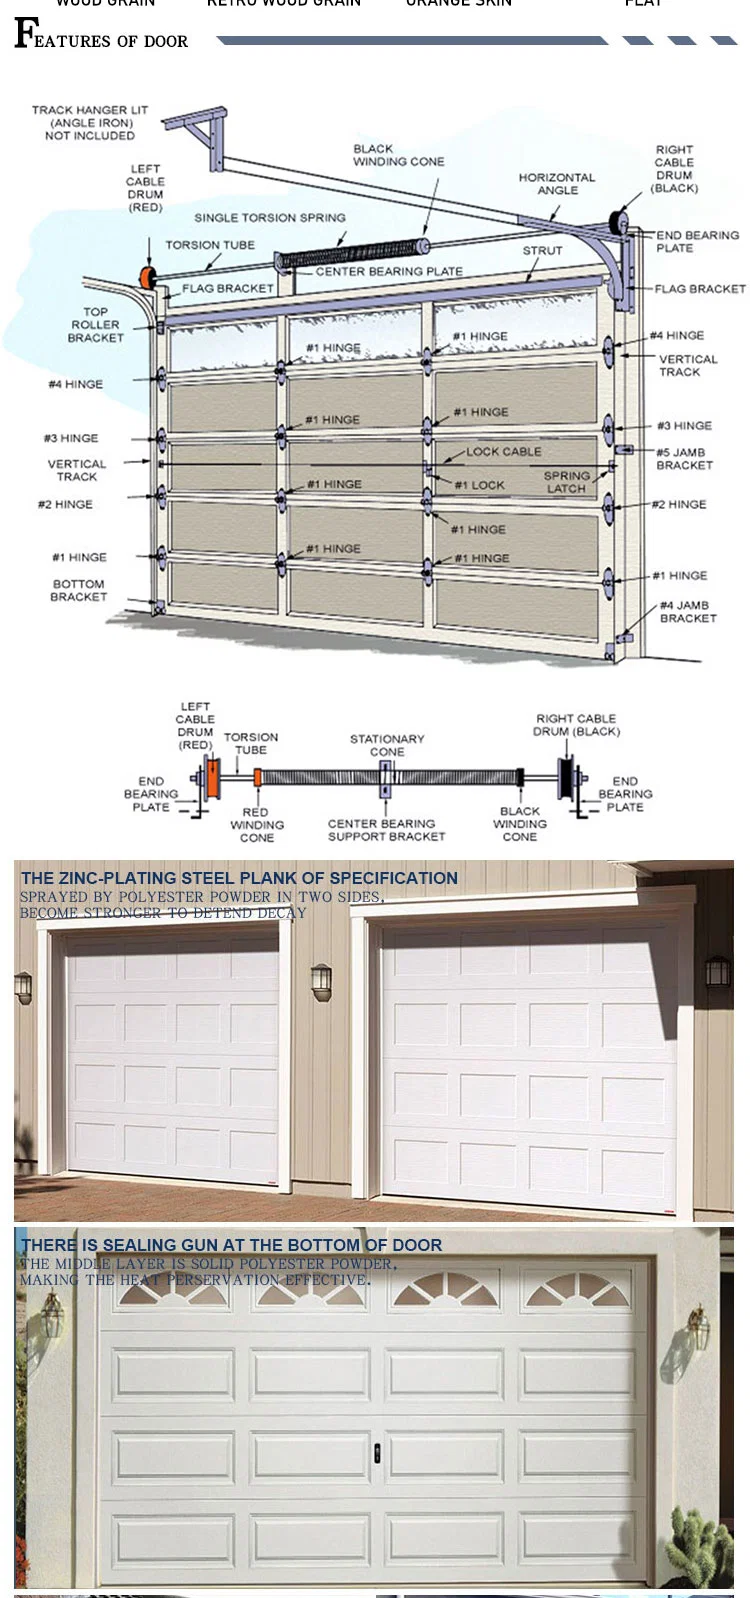 Commercial External Wood Alluminiam 7X7 Roll up Metal Door 16X 7 Bifold Tilt up Garage Door 8 X 8 with Motor Frame